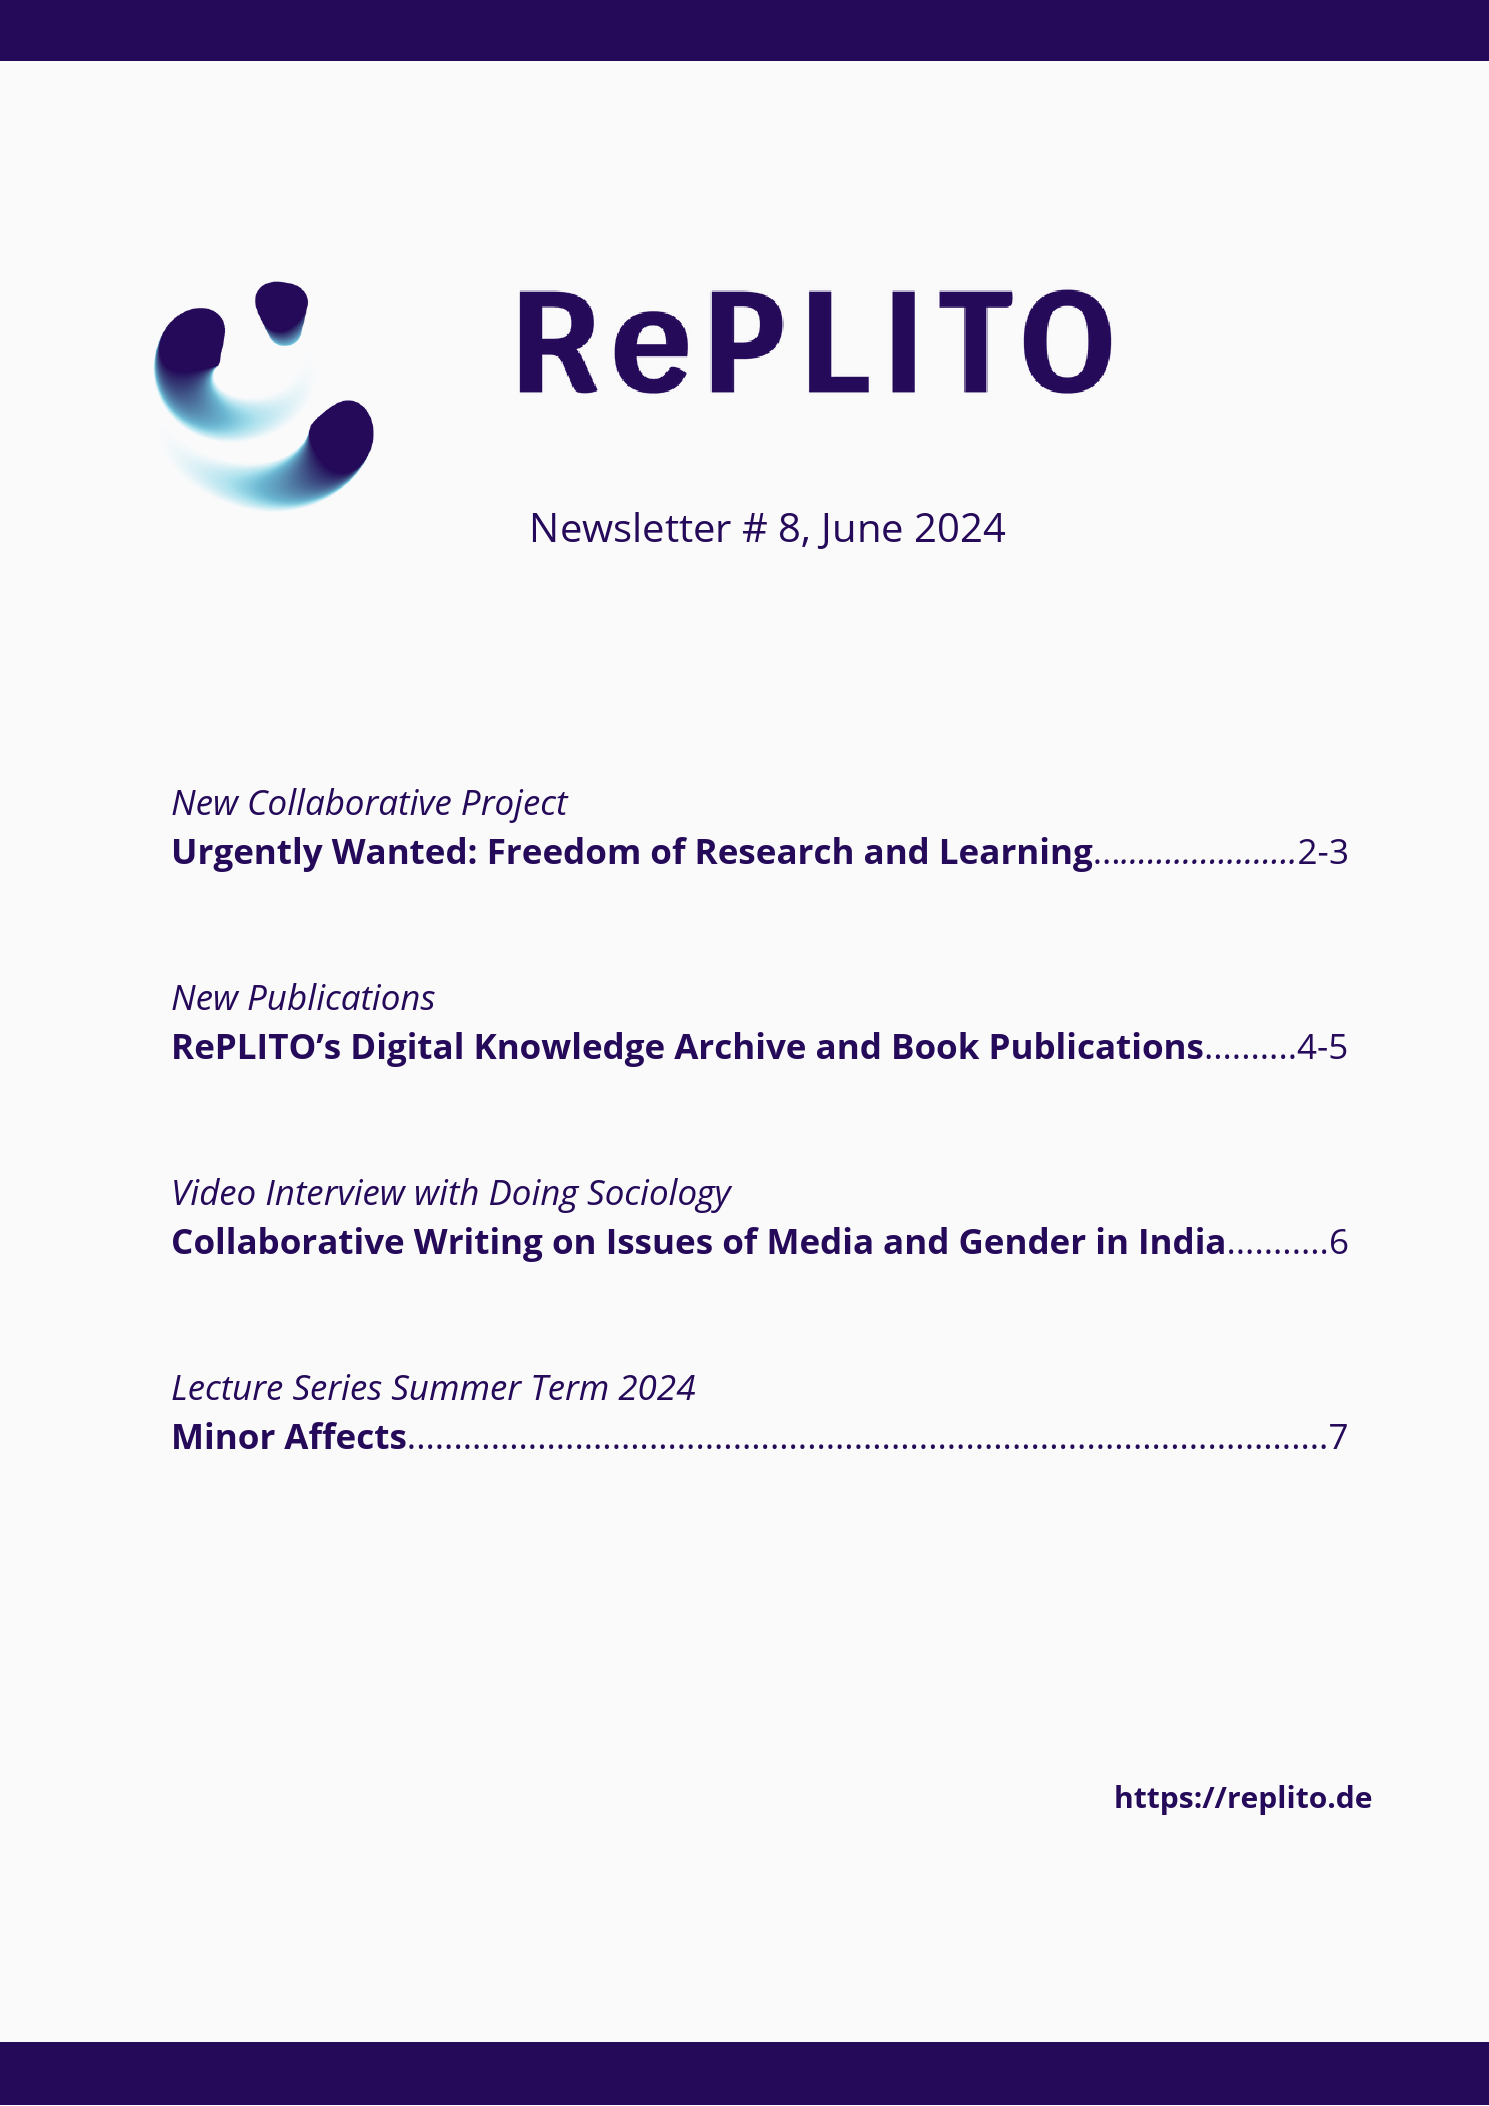 RePLITO Quarterly Newsletter # 7 November 2023.png